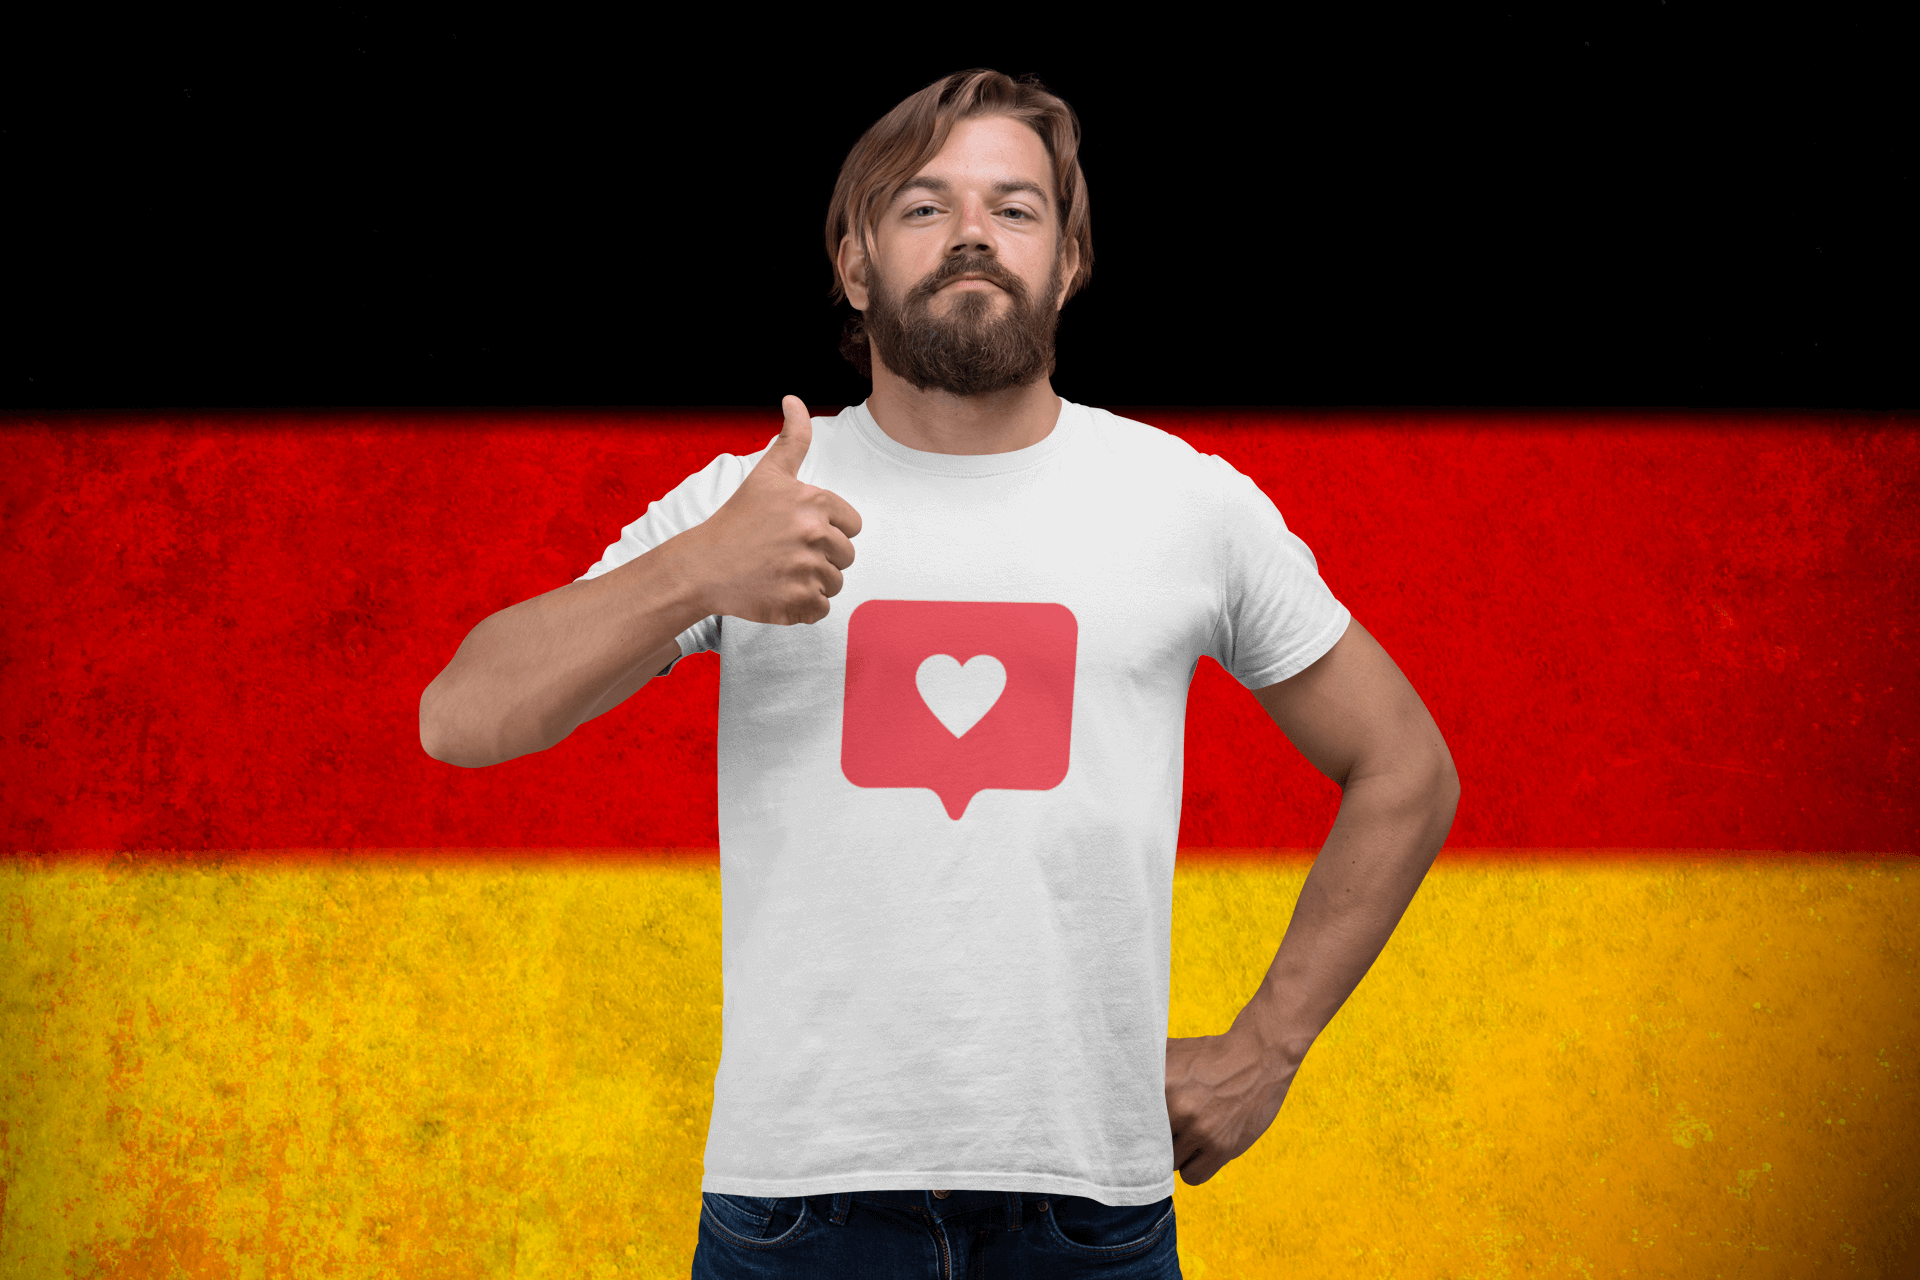 buy German premium instagram likes